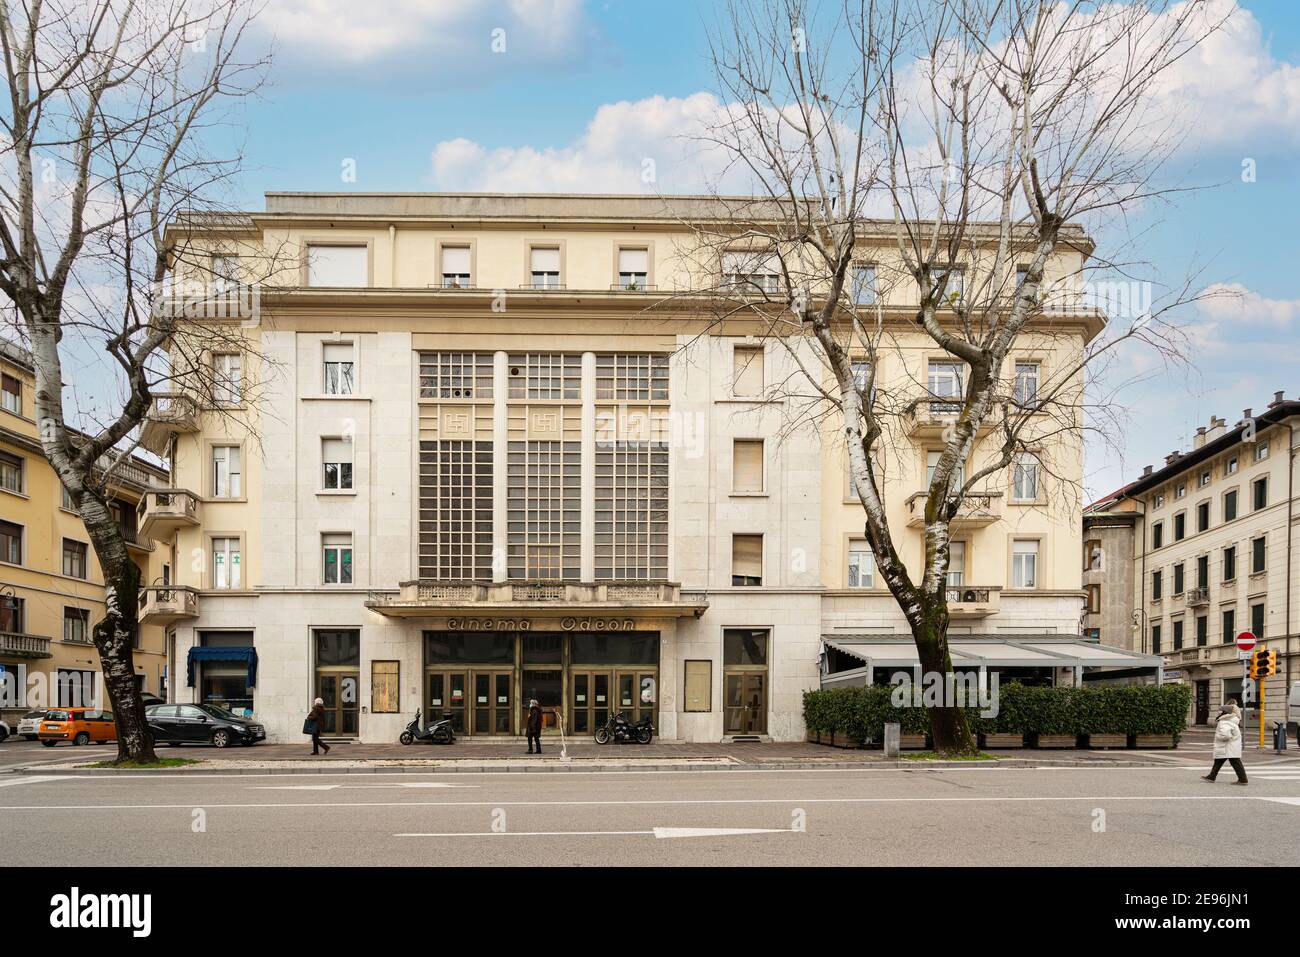 Udine, Italien. Februar 2 2021. Sitz des ehemaligen Odeon-Kinos in dem Gebäude, das der Architekt Ettore gilberti 1935 entworfen hat Stockfoto